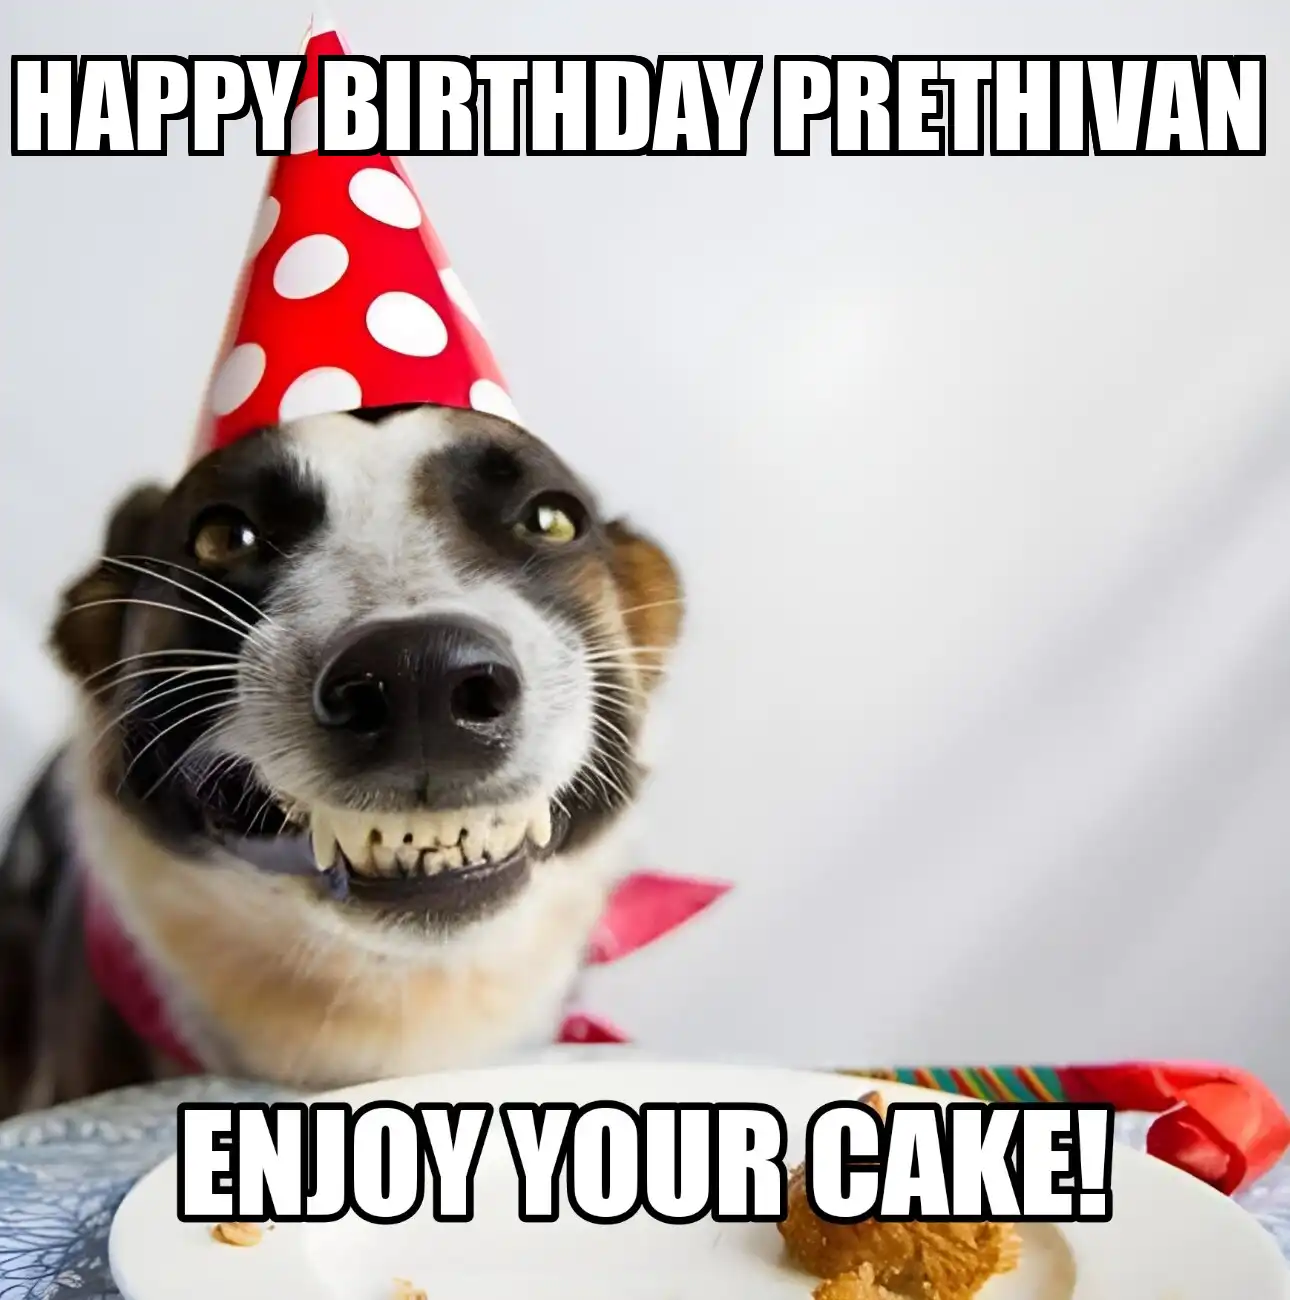 Happy Birthday Prethivan Enjoy Your Cake Dog Meme